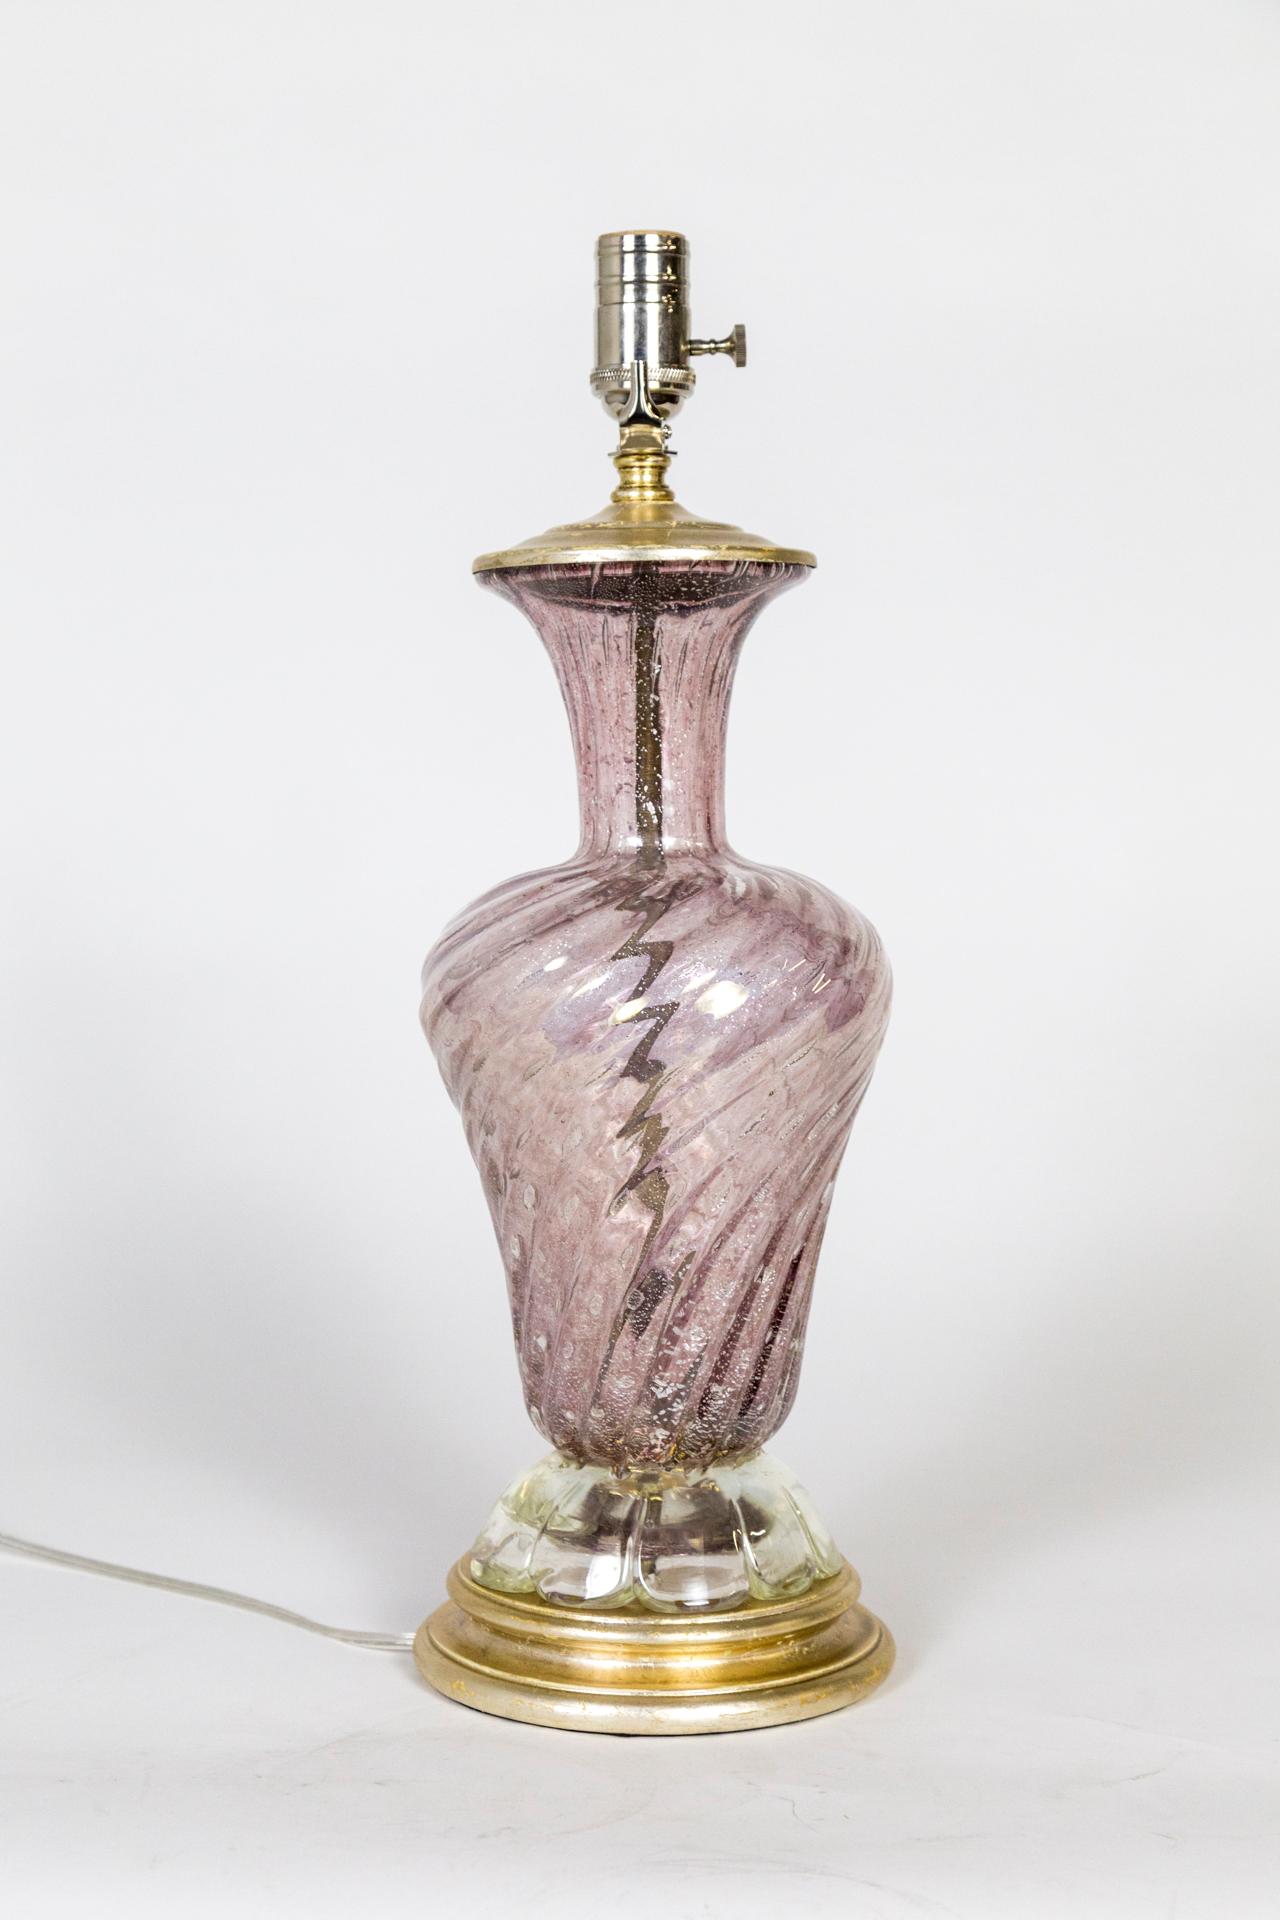 Lampe en verre de Murano en forme d'urne tourbillonnante avec fond festonné, de couleur rose poussiéreuse transparente avec des mouchetures d'argent ; base et capuchon dorés à l'argent. Quincaillerie en nickel poli, dorure à la feuille d'argent